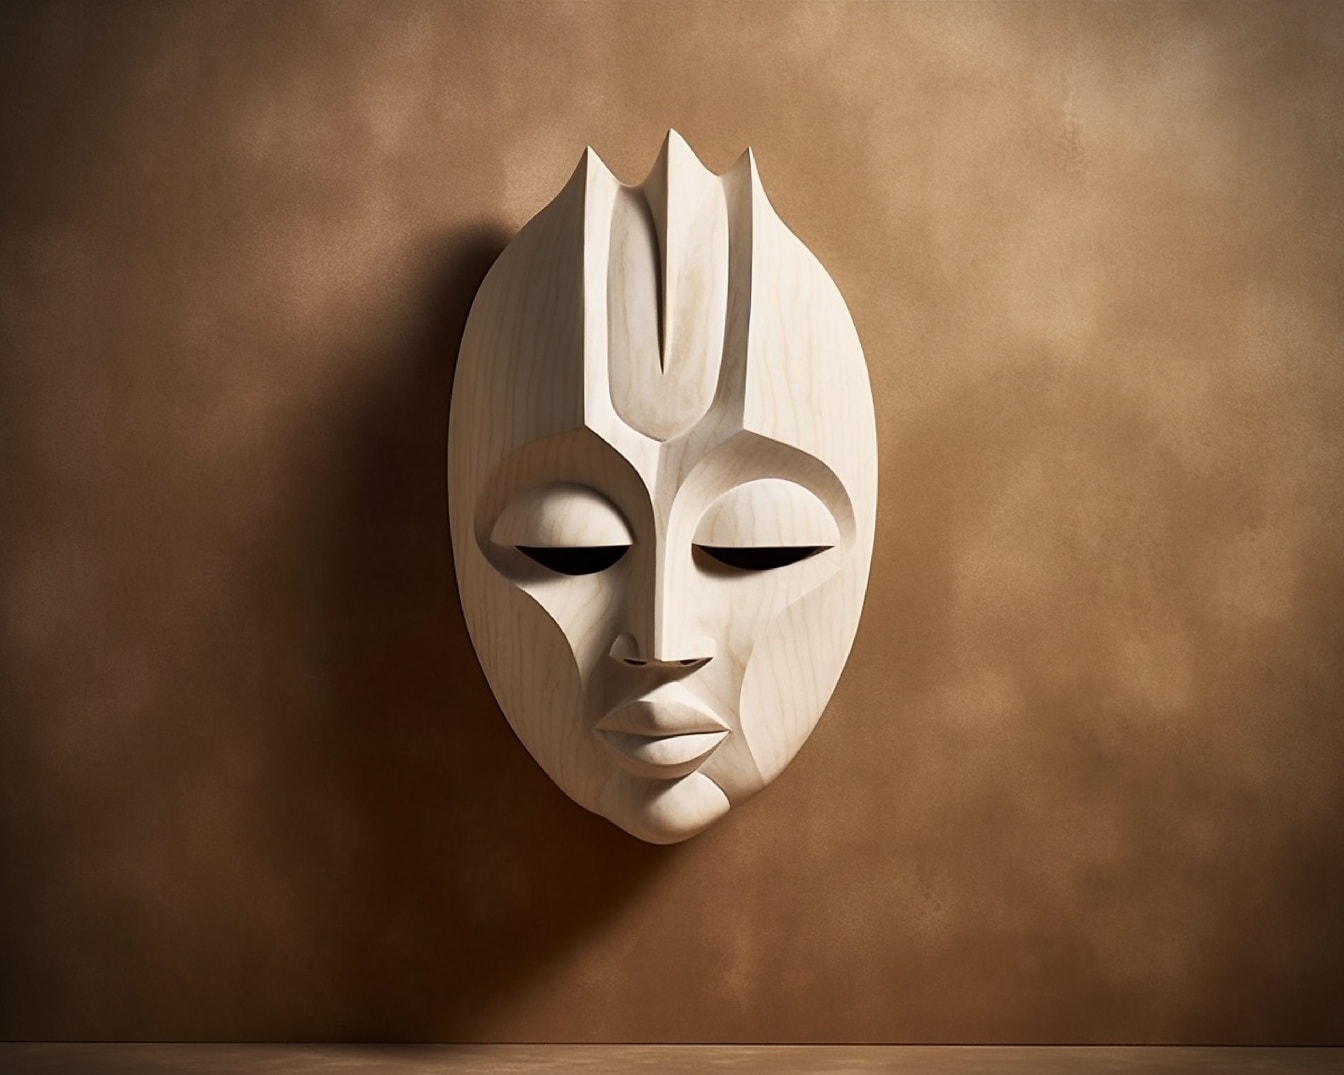 Açık kahverengi duvarda bej Afrika yüz maskesinin fotomontajı